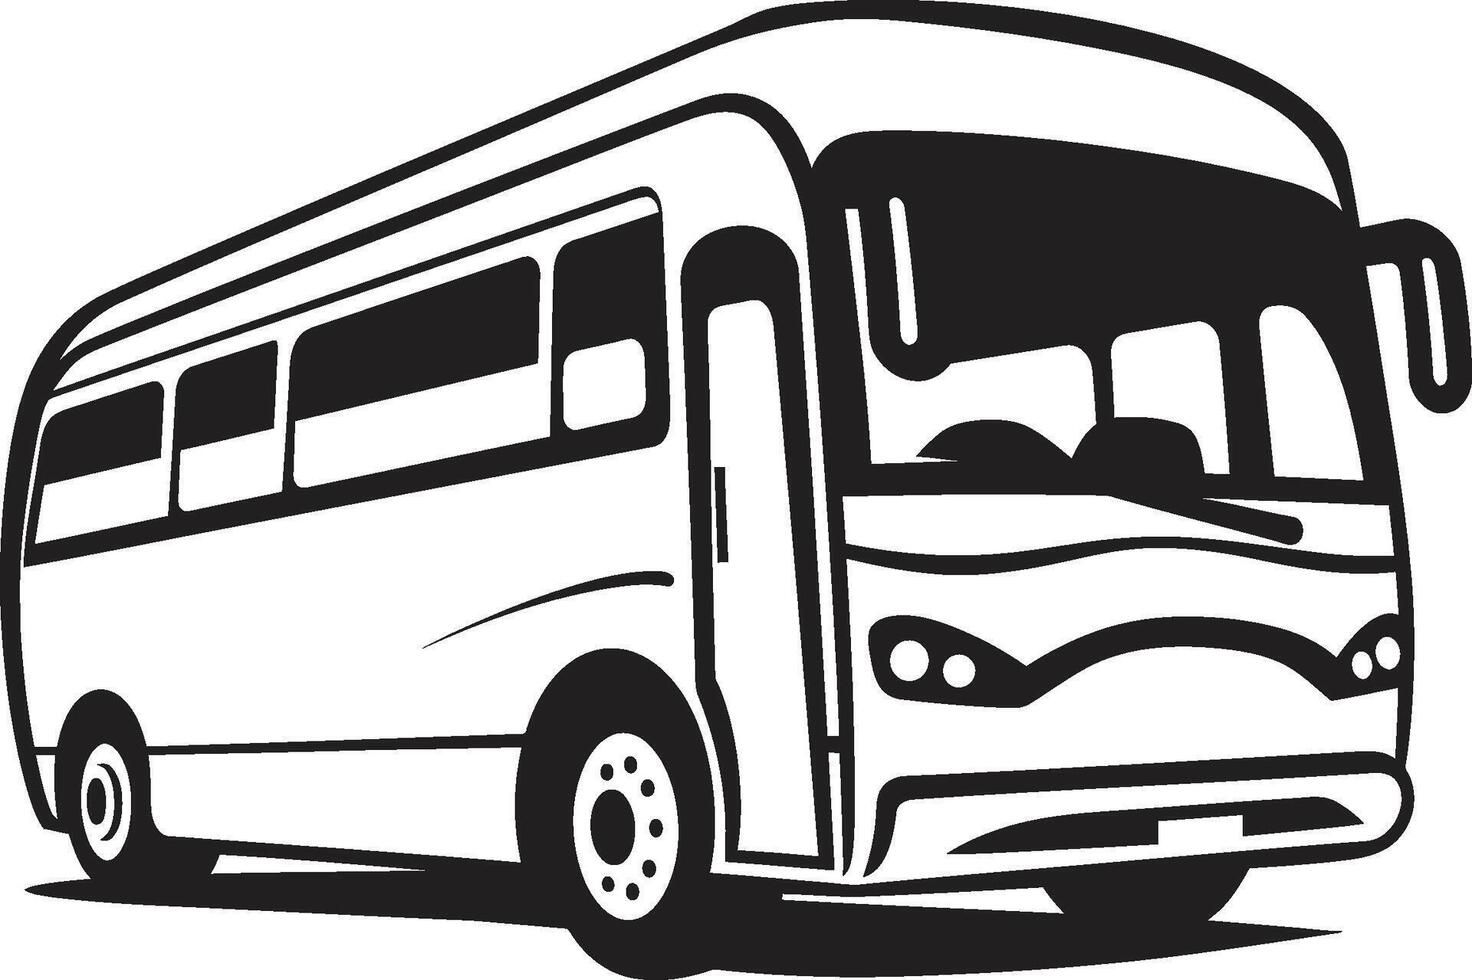 transito charme monocromático ônibus logotipo ônibus enigma Preto logotipo vetor